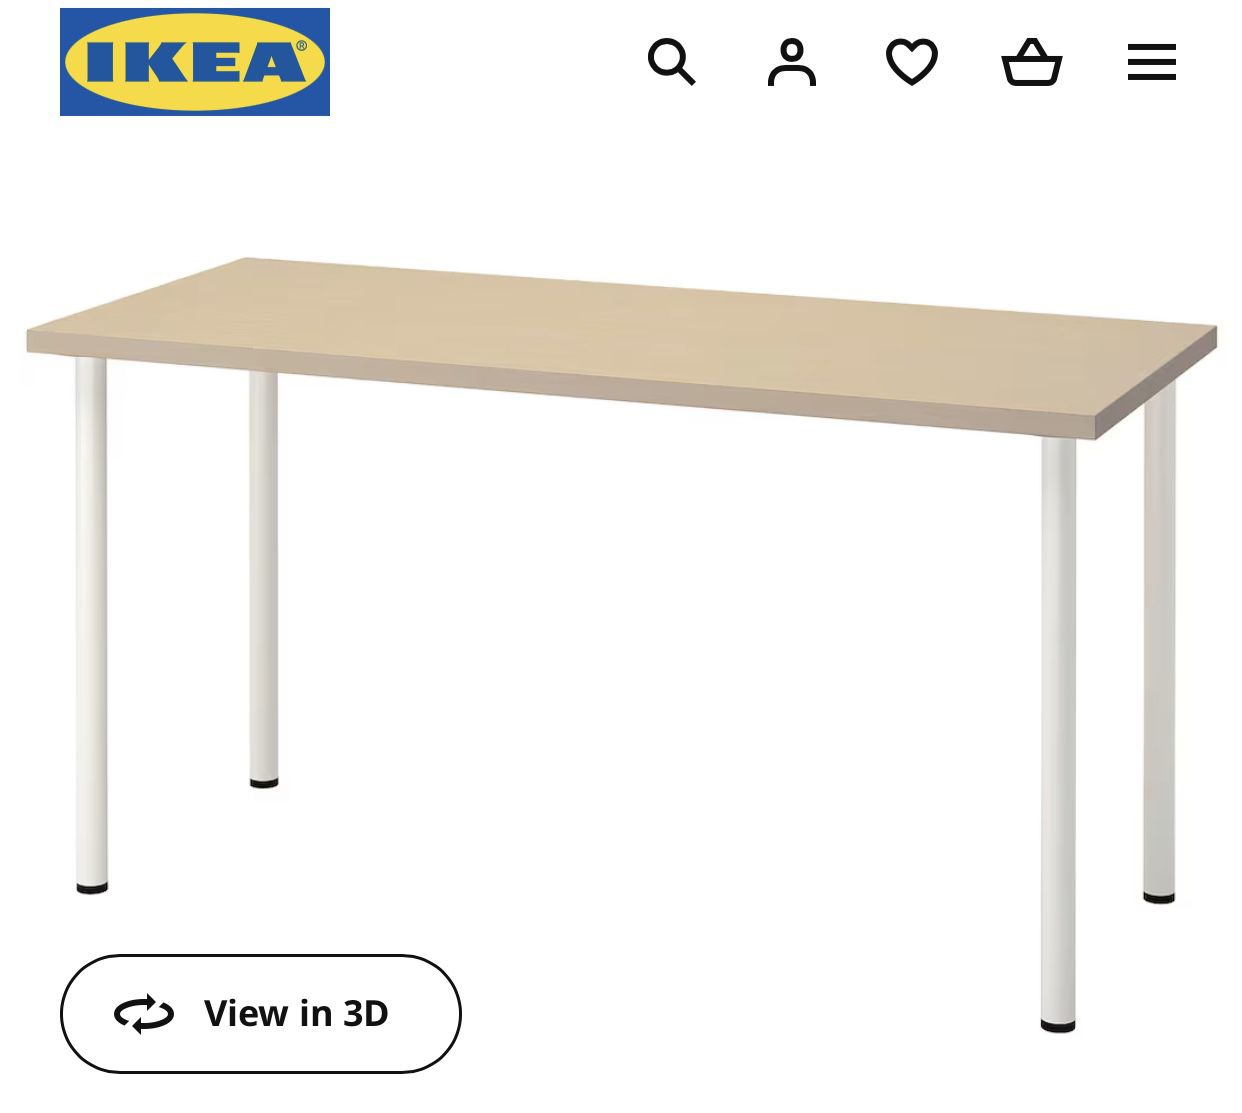 IKEA DESK